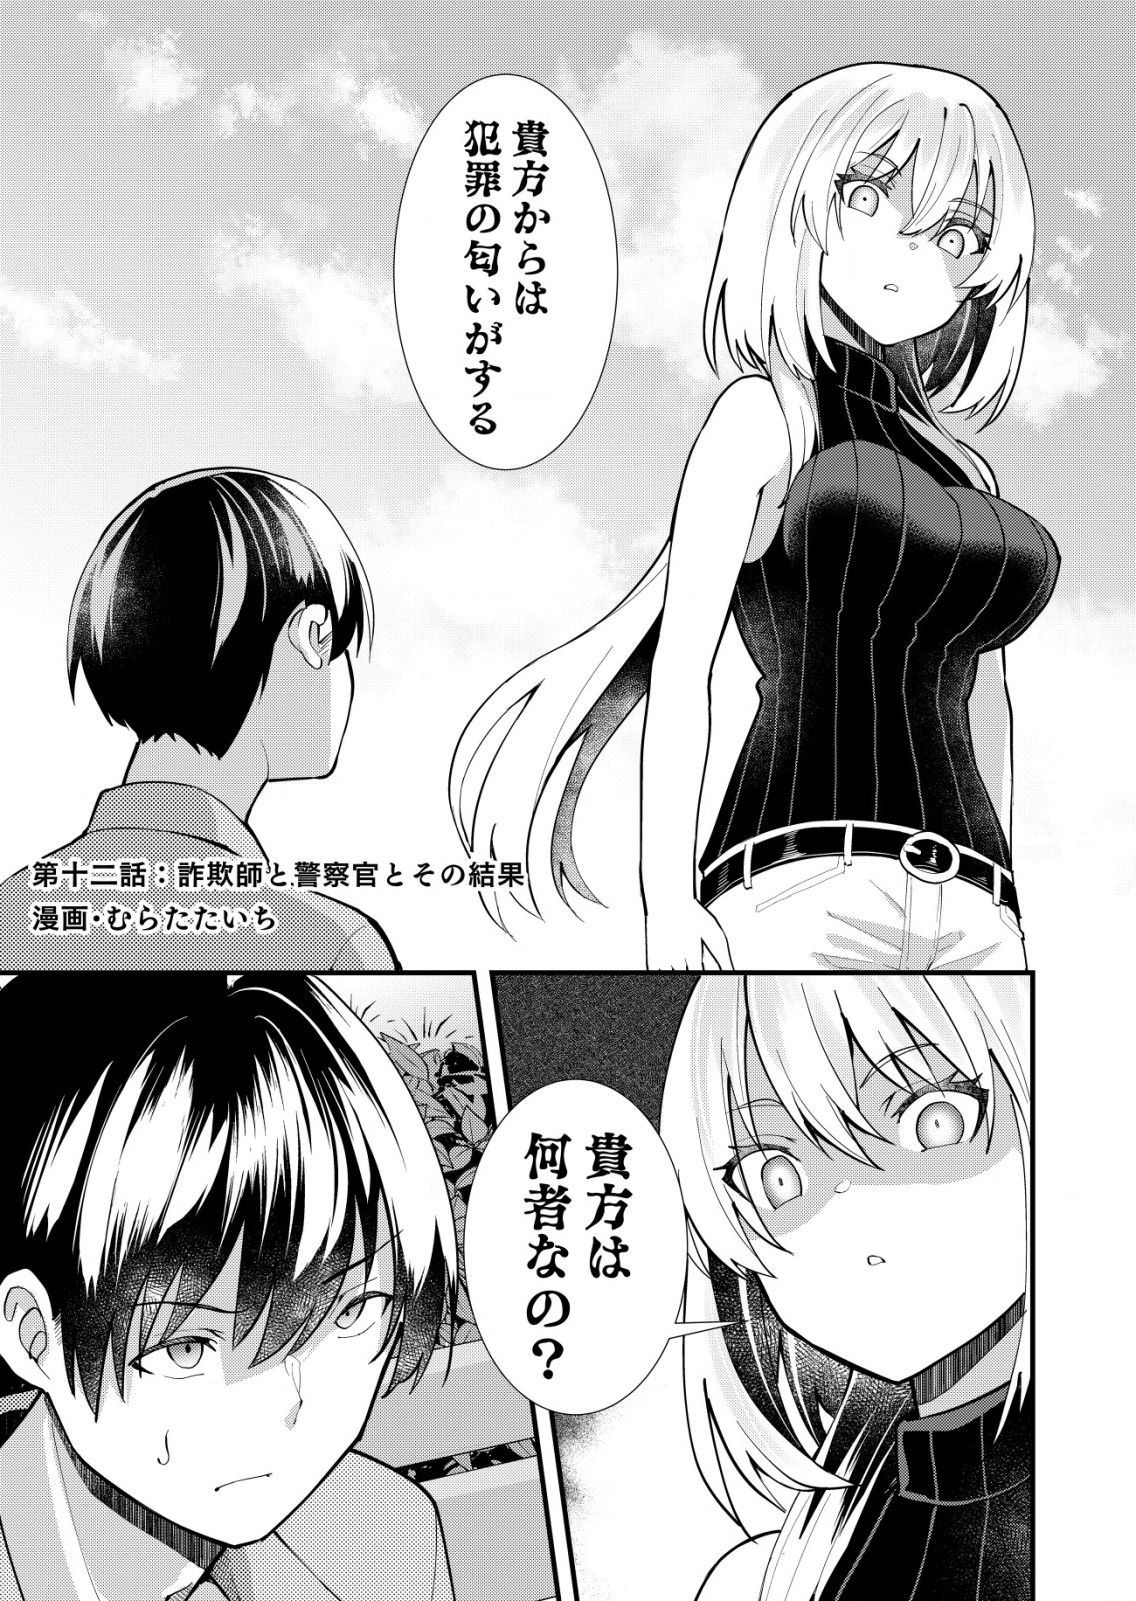 Sagishi to Kisatsukan no Renai kyori - Chapter 12 - Page 1